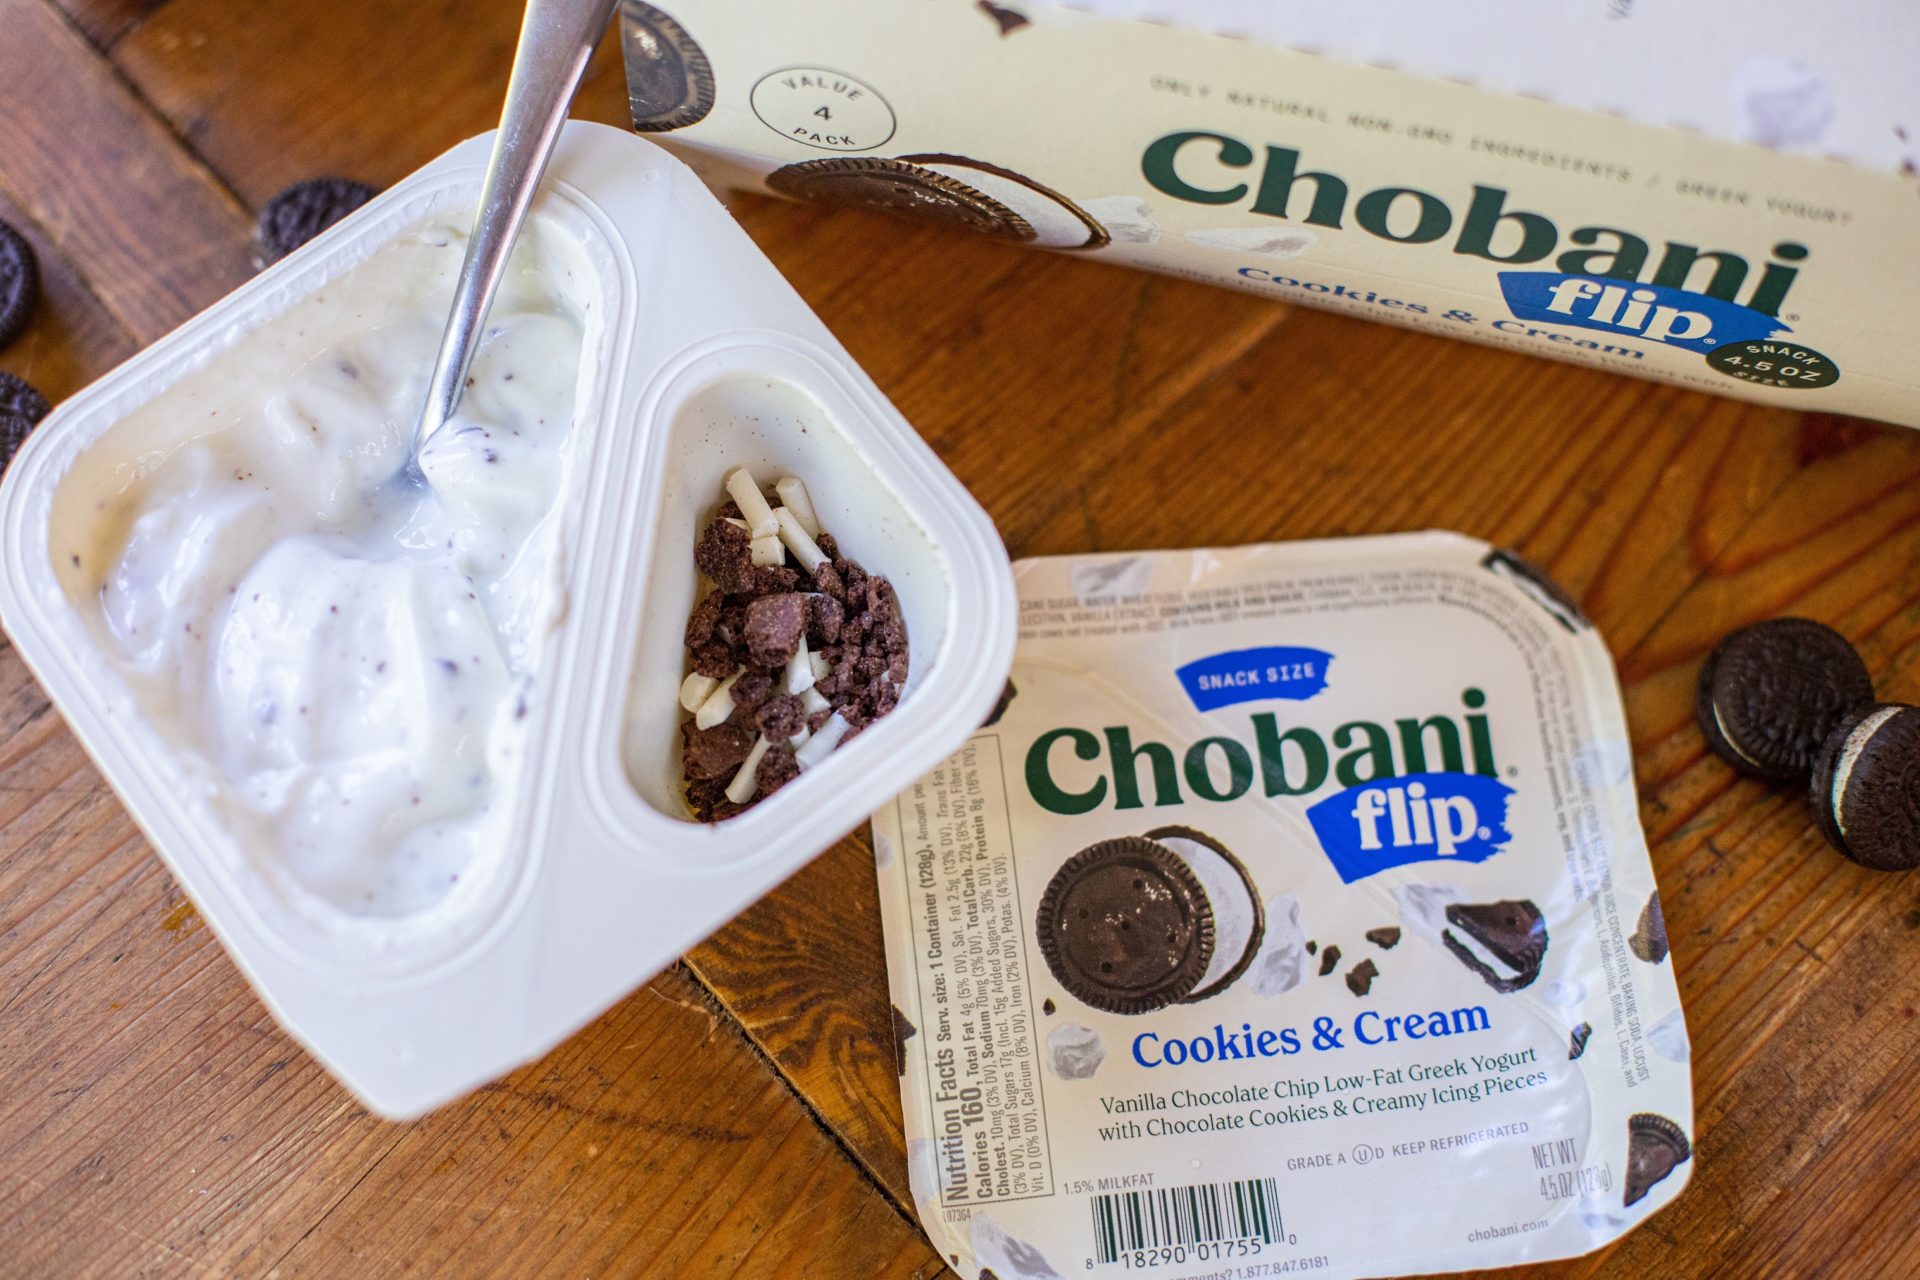 Chobani Flip Yogurt As Low As 68¢ At Kroger